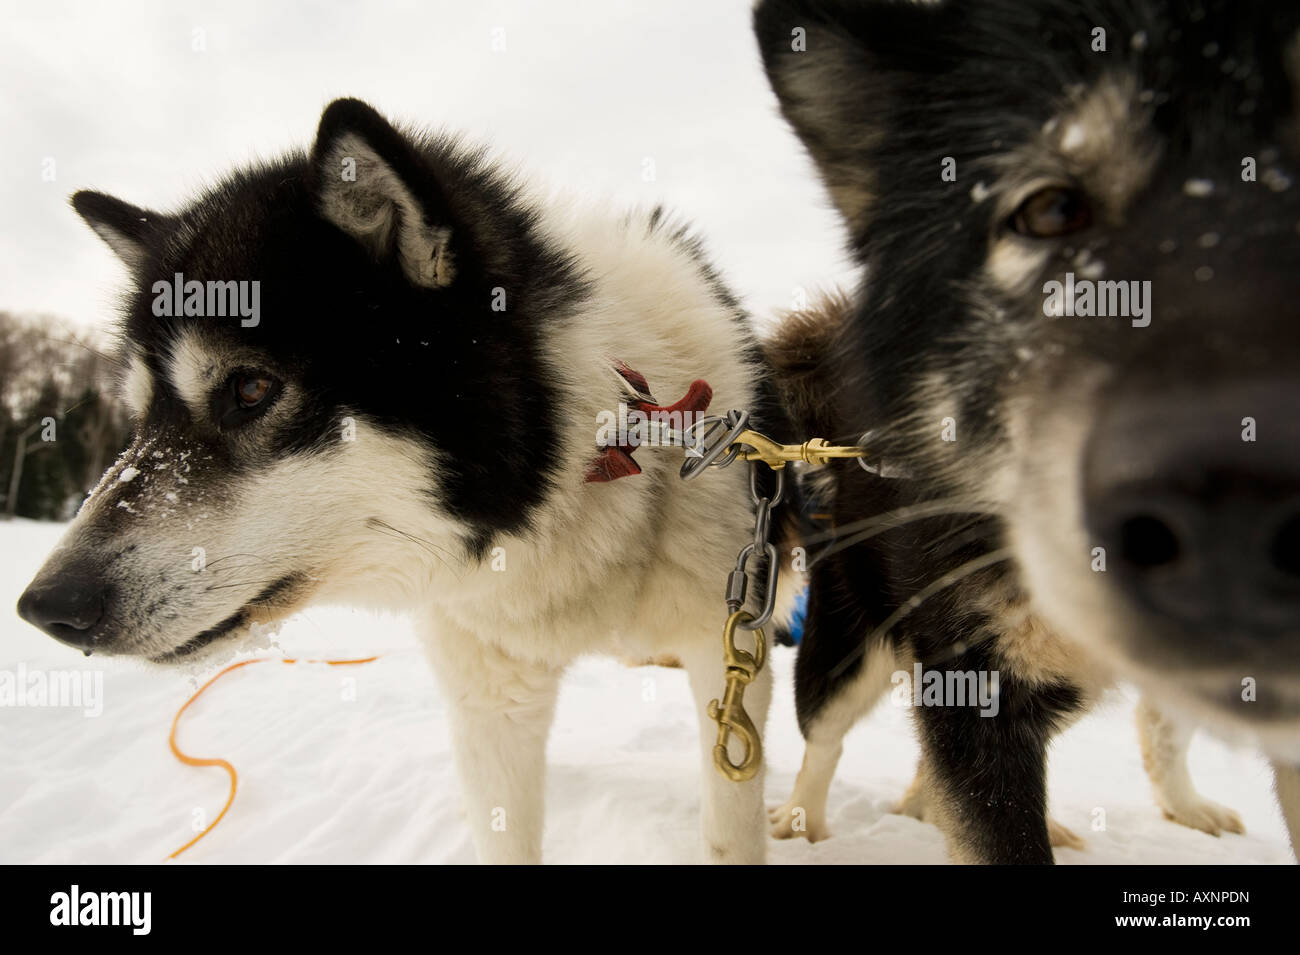 Un couple de chiens inuits CANADIENS DE PRENDRE UNE PAUSE DE TIRANT Boundary Waters Canoe Area au Minnesota Banque D'Images